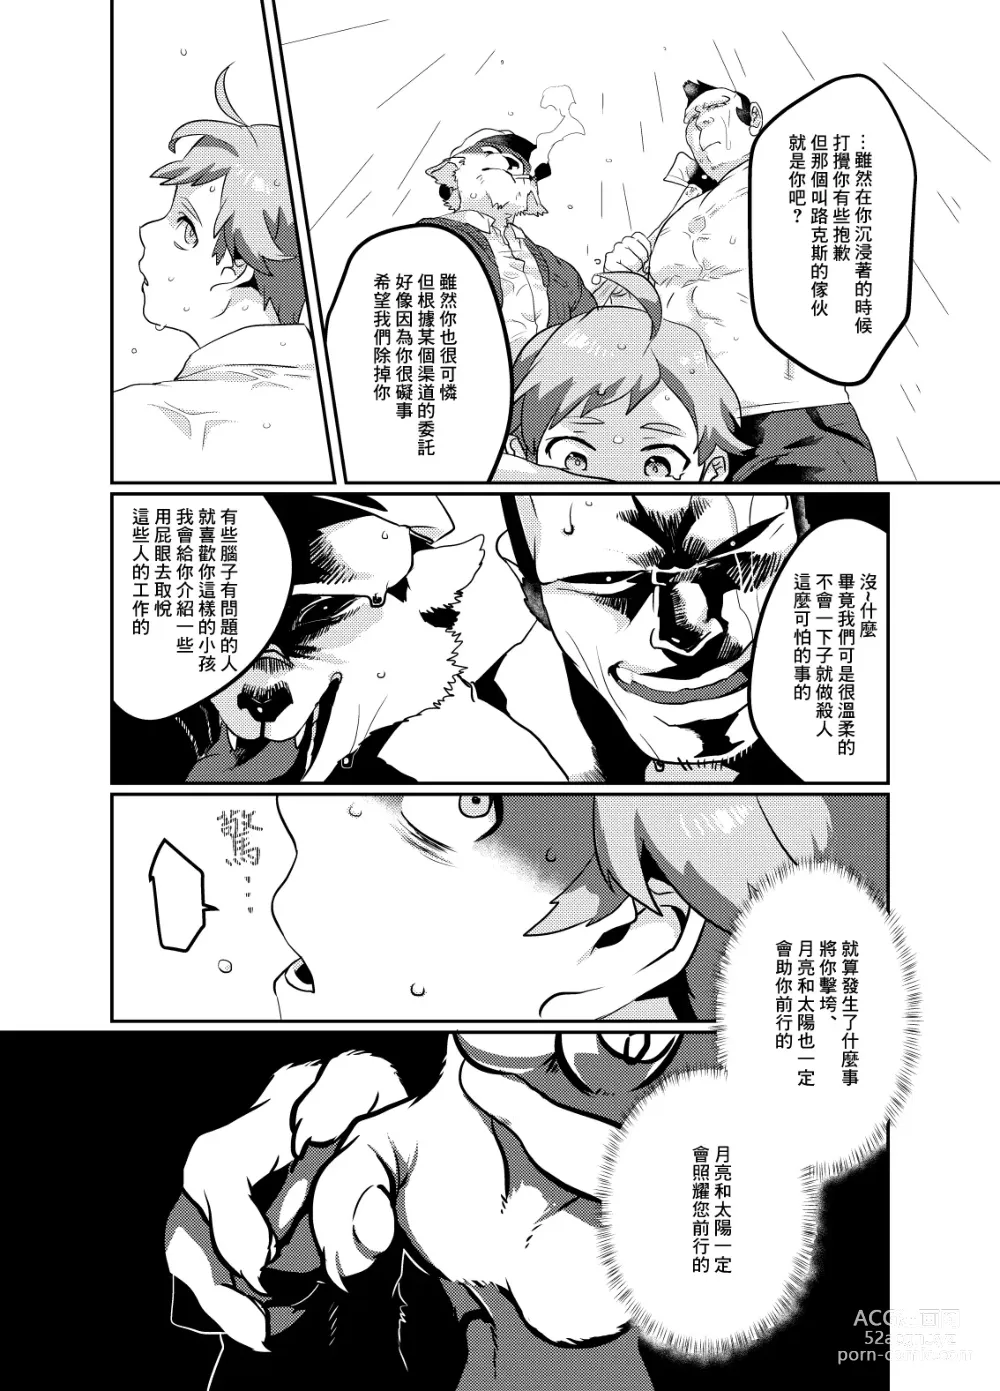 Page 7 of doujinshi Meido inHEAVEN